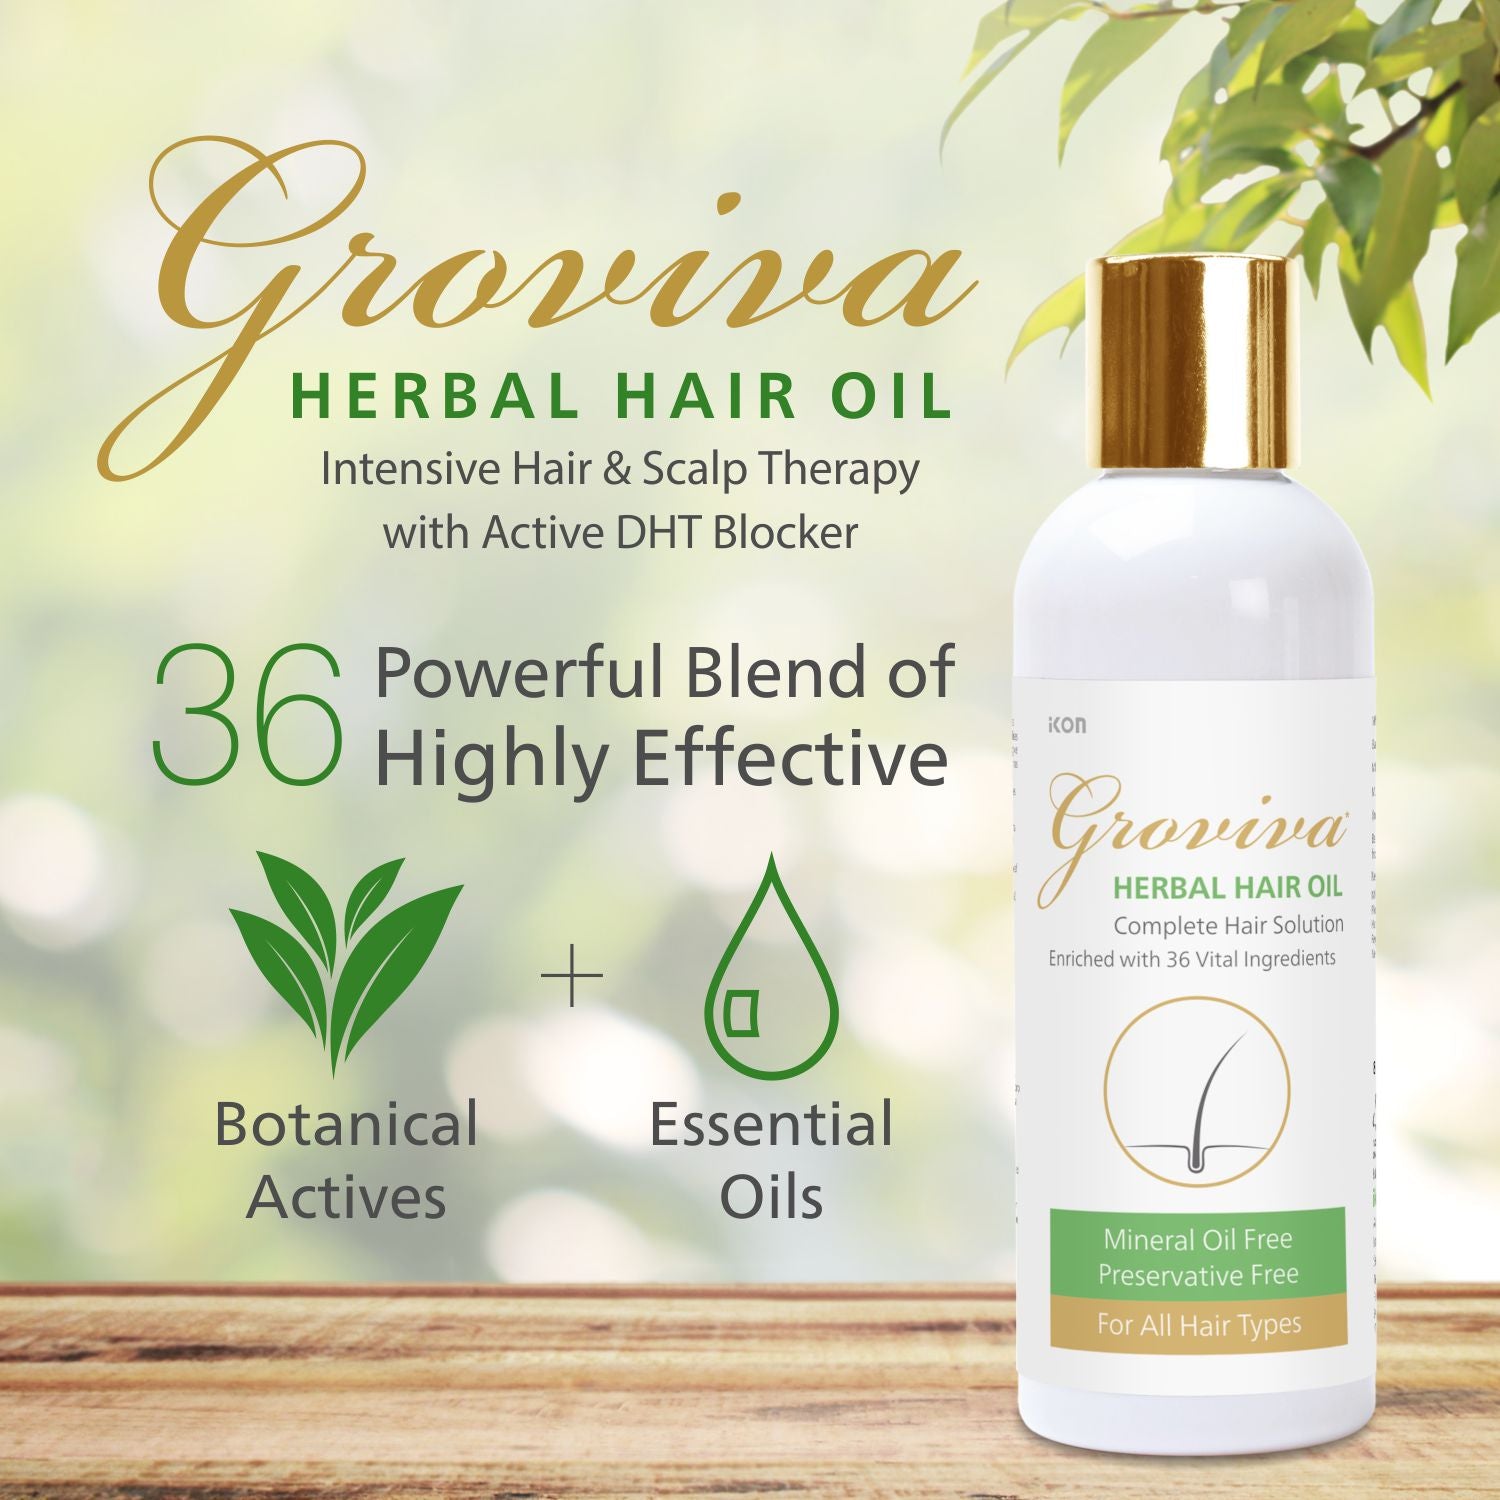 Groviva Herbal Hair Oil (100 ml)